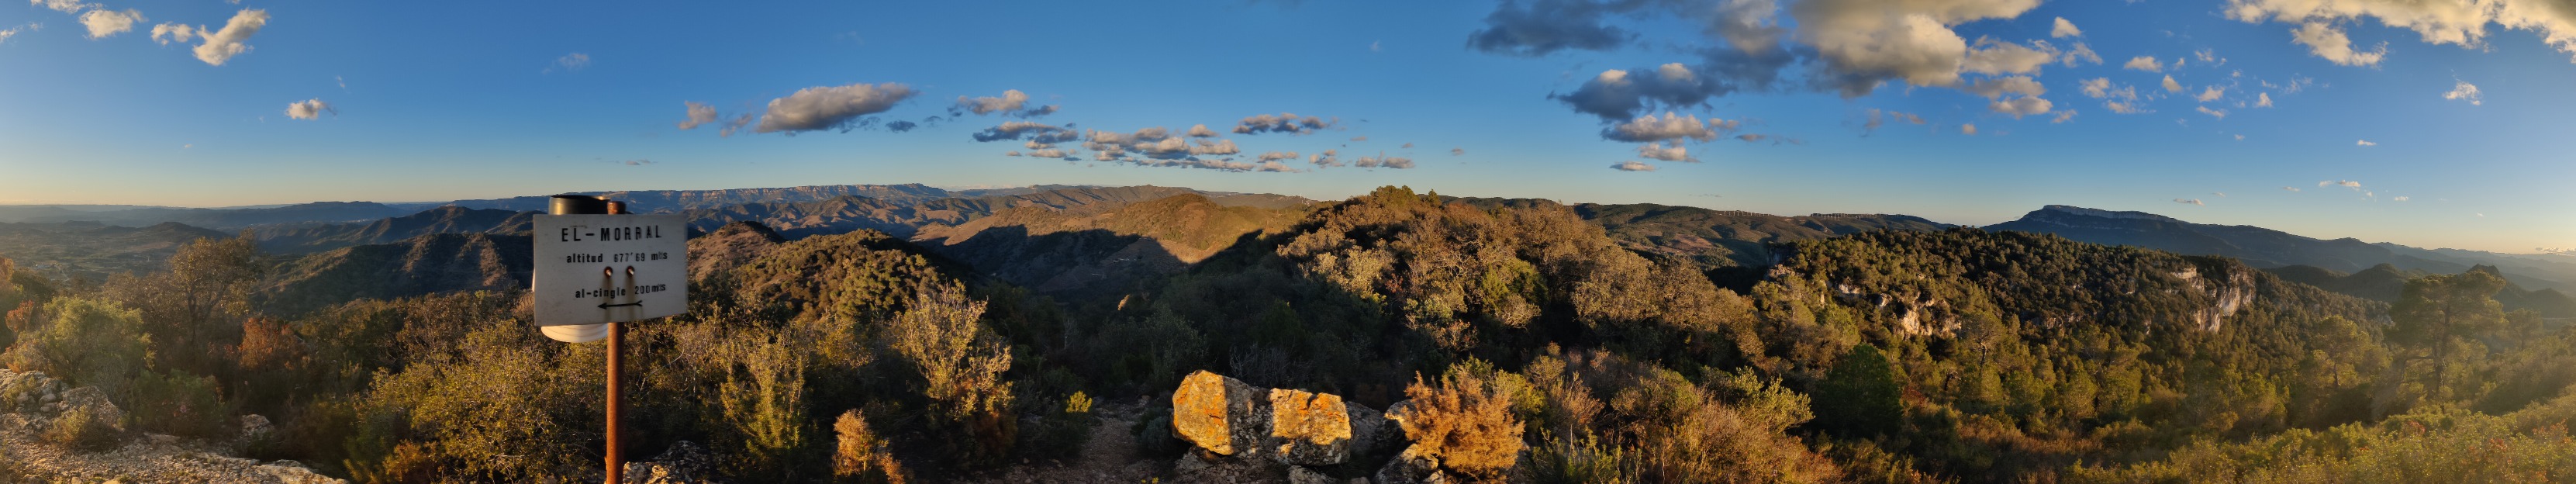 Vistas desde la cima de Lo Morral (682 m) según Wikiloc y el cartel